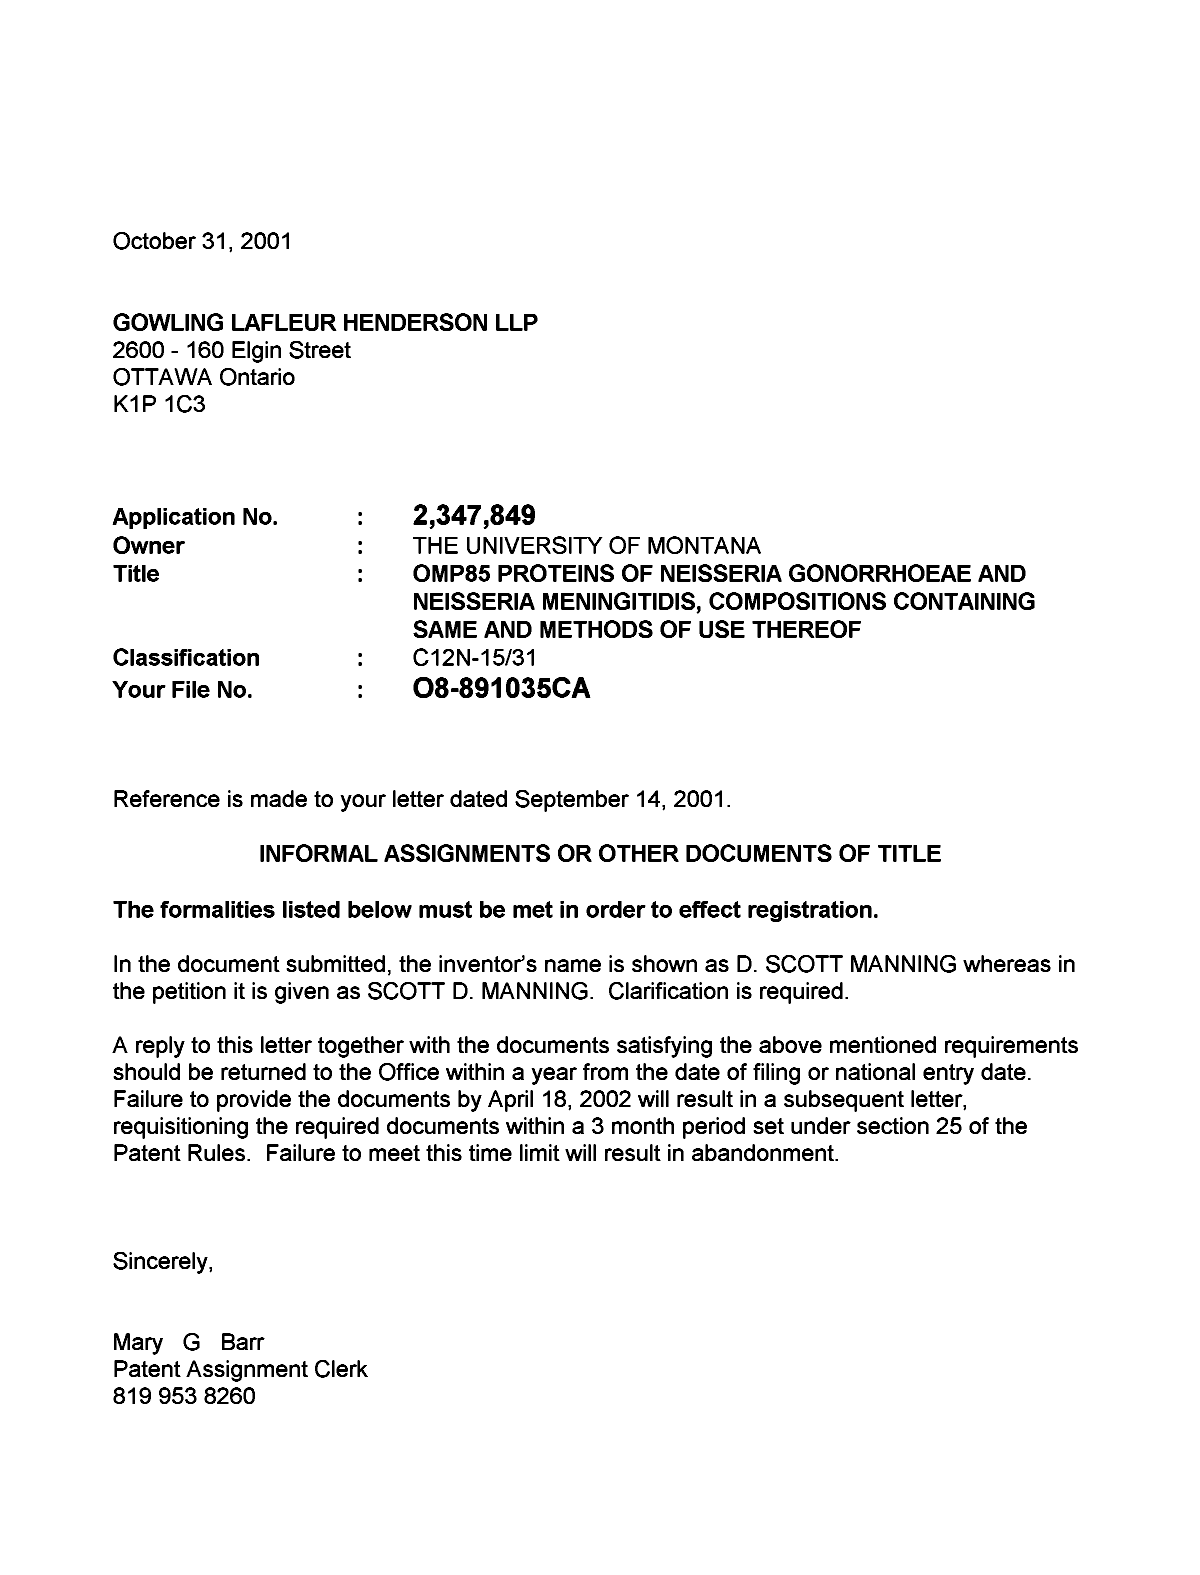 Document de brevet canadien 2347849. Correspondance 20011031. Image 1 de 1